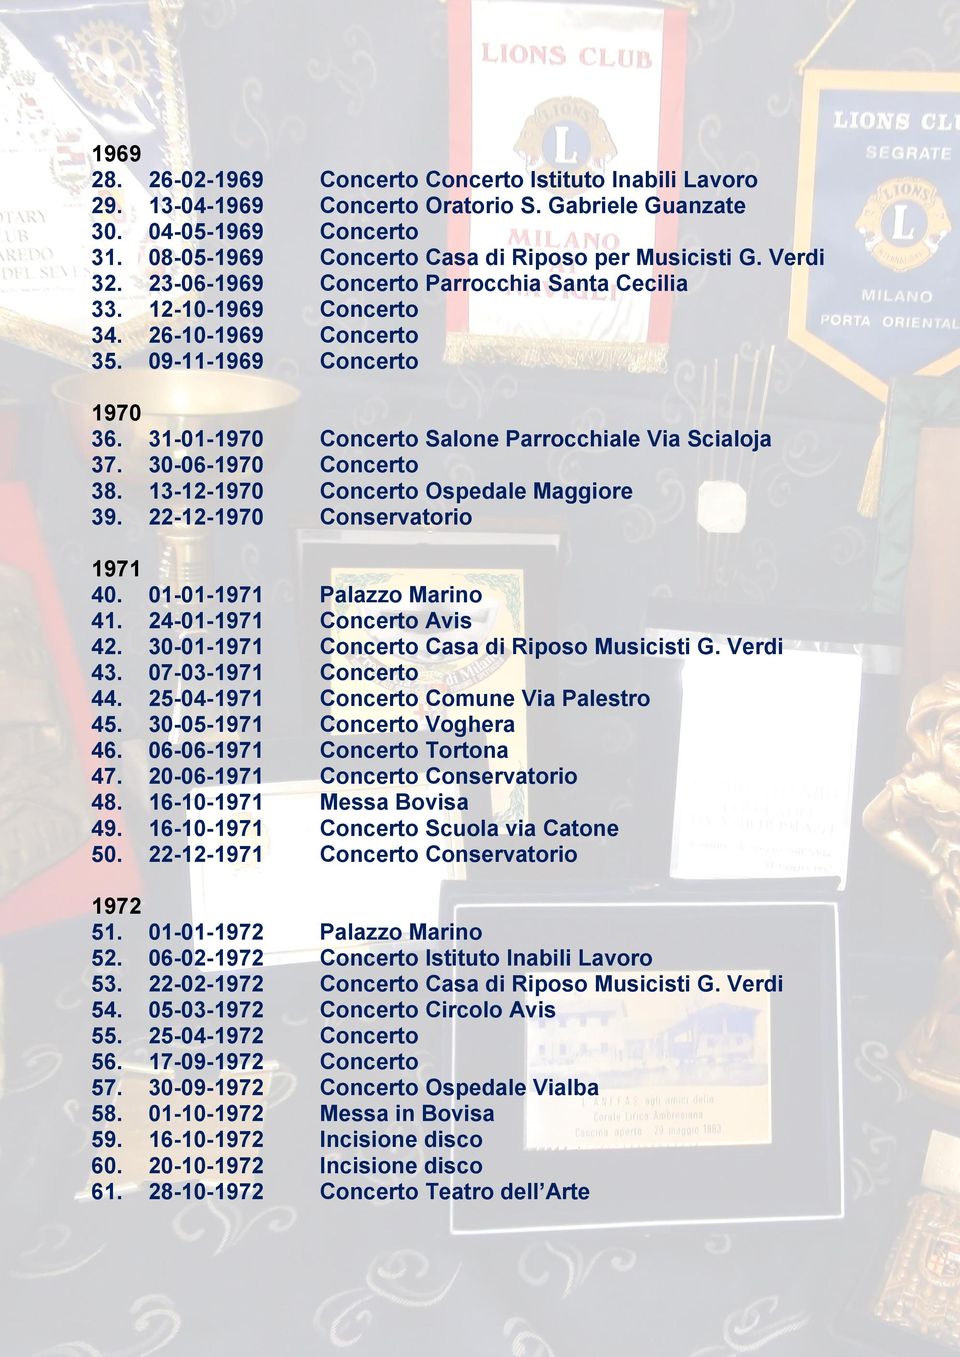 30-06-1970 Concerto 38. 13-12-1970 Concerto Ospedale Maggiore 39. 22-12-1970 Conservatorio 1971 40. 01-01-1971 Palazzo Marino 41. 24-01-1971 Concerto Avis 42.